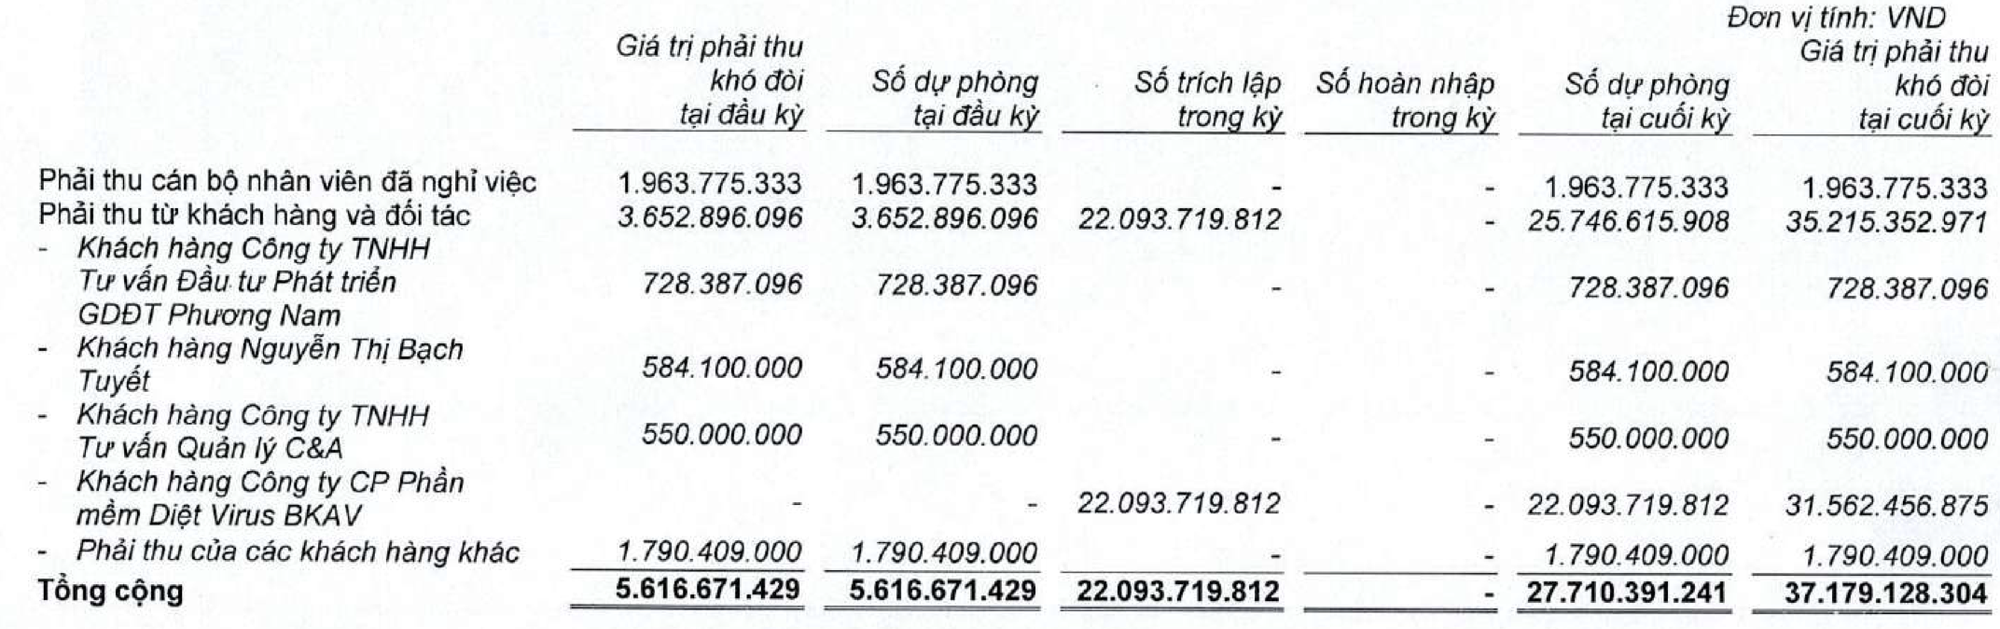 Bkav Pro của ông Nguyễn Từ Quảng: Từ mức giá 2.100 tỷ đồng, vay tiền cho giấc mơ Bphone đến cú trượt về lợi nhuận và nợ khó đòi tại VNDirect - Ảnh 2.